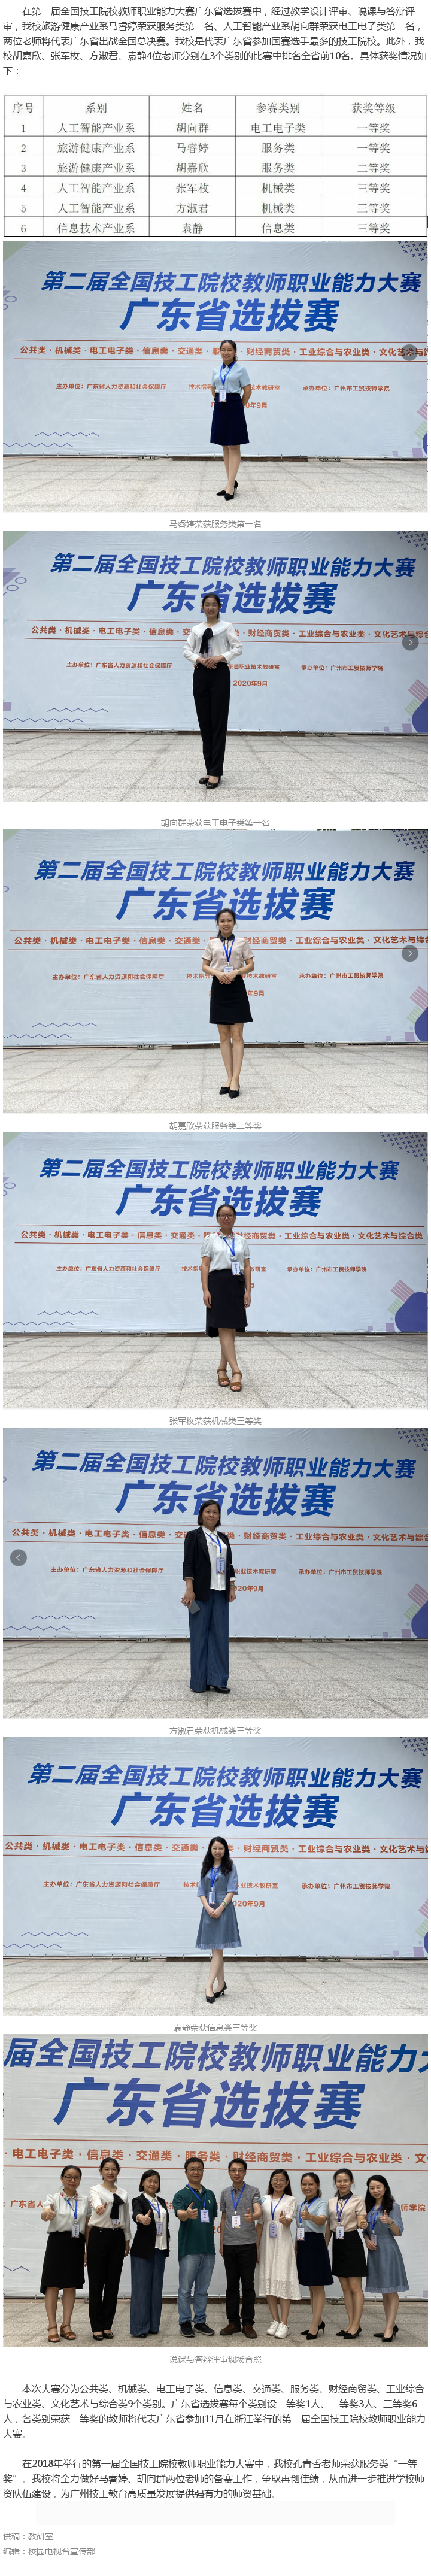 【喜讯】我校两位教师将代表广东省参加第二届全国技工院校教师职业能力大赛